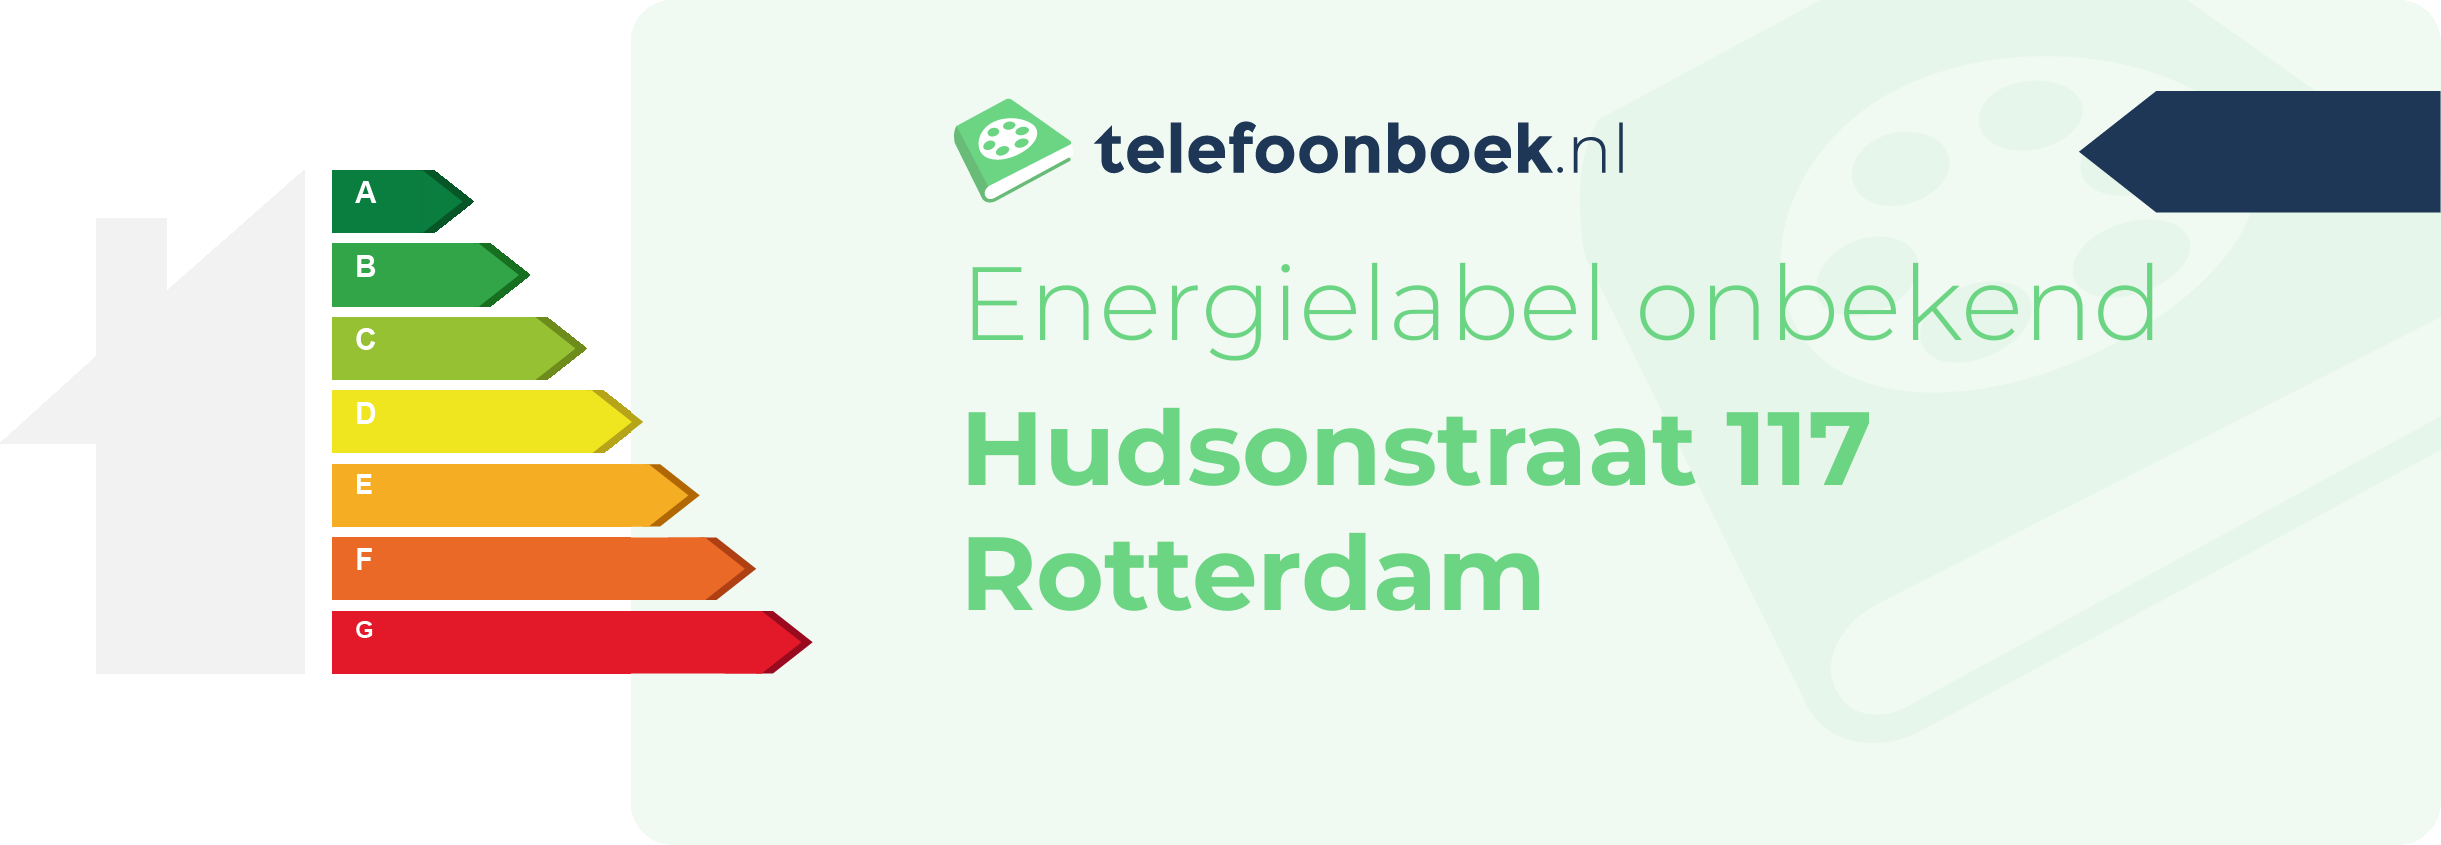 Energielabel Hudsonstraat 117 Rotterdam